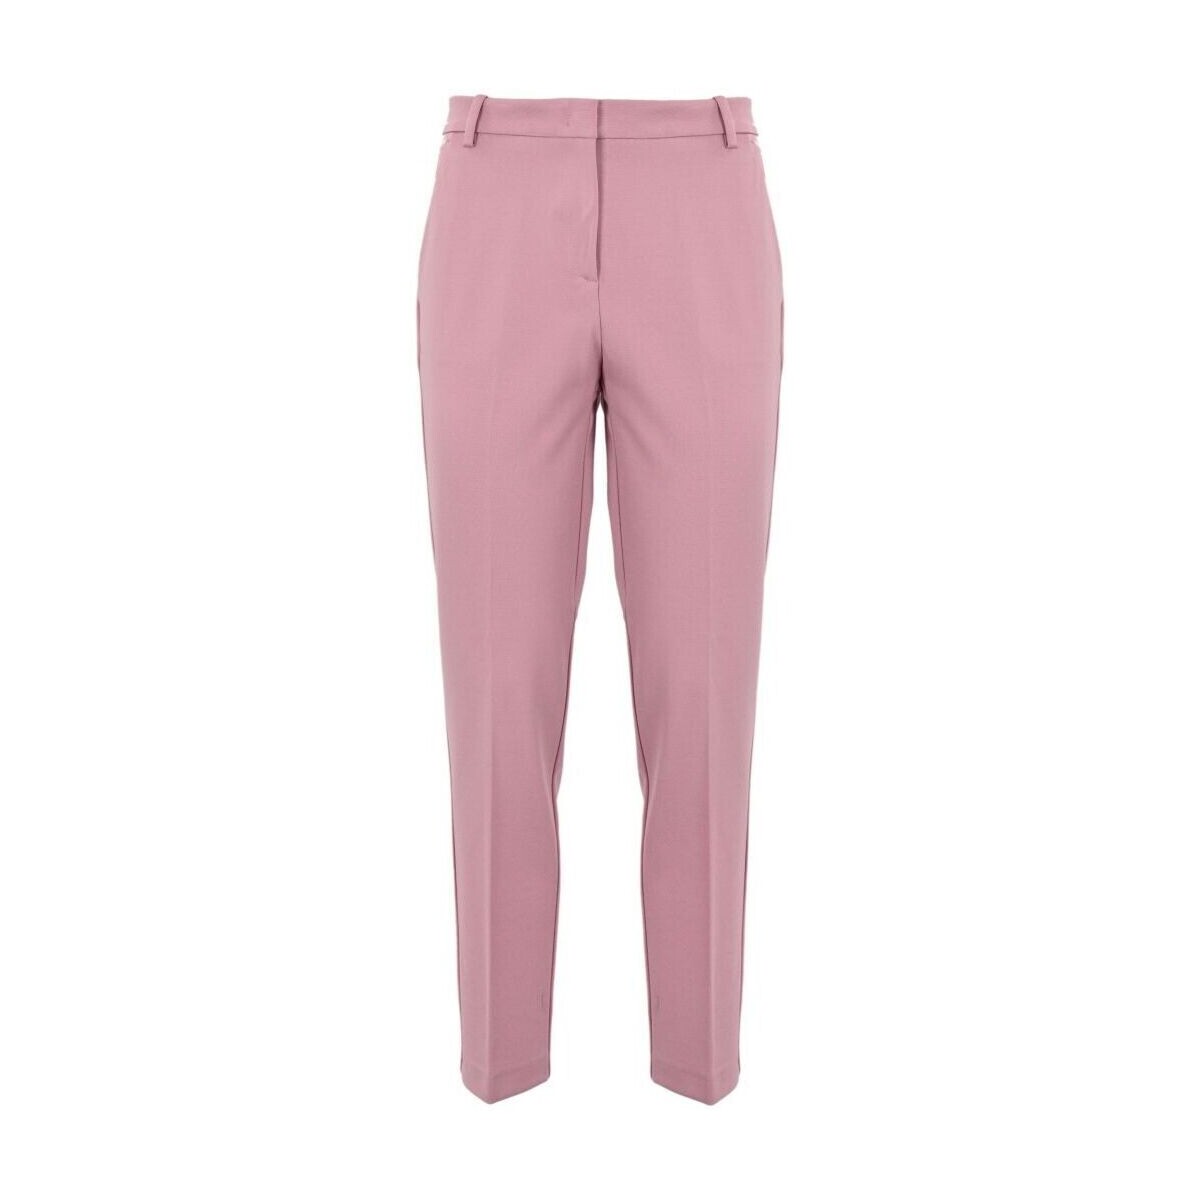 Vêtements Femme Pantalons Pinko BELLO 100155 A1L4-N98 Rose